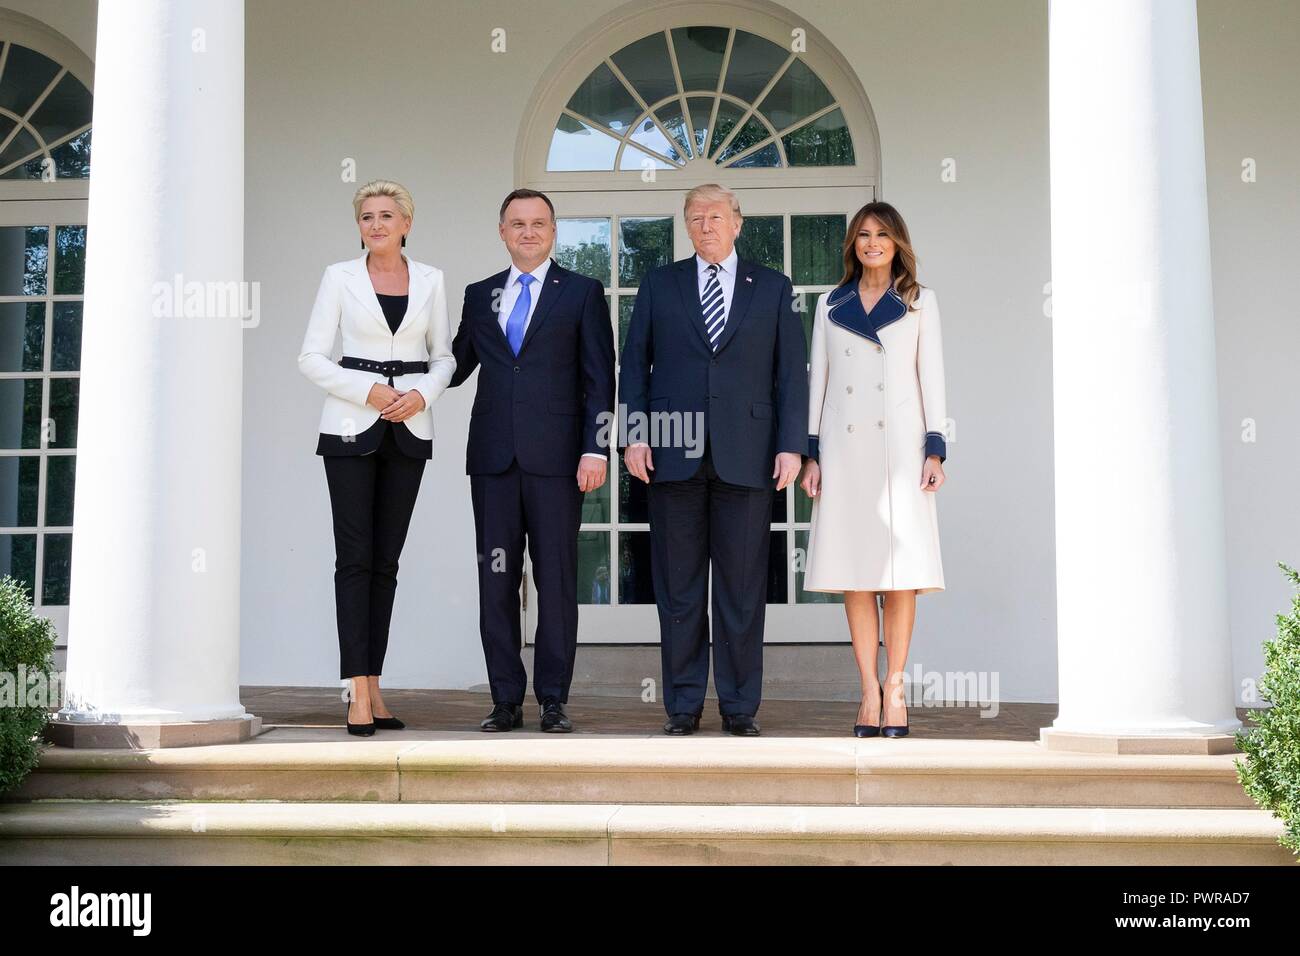 Président américain Donald Trump pose avec le président polonais Andrzej Duda, sa femme Kornhauser-Duda Agata, gauche, et de la Première Dame Melania Trump, droit, dans la roseraie de la Maison Blanche le 18 septembre 2018 à Washington, DC. Banque D'Images